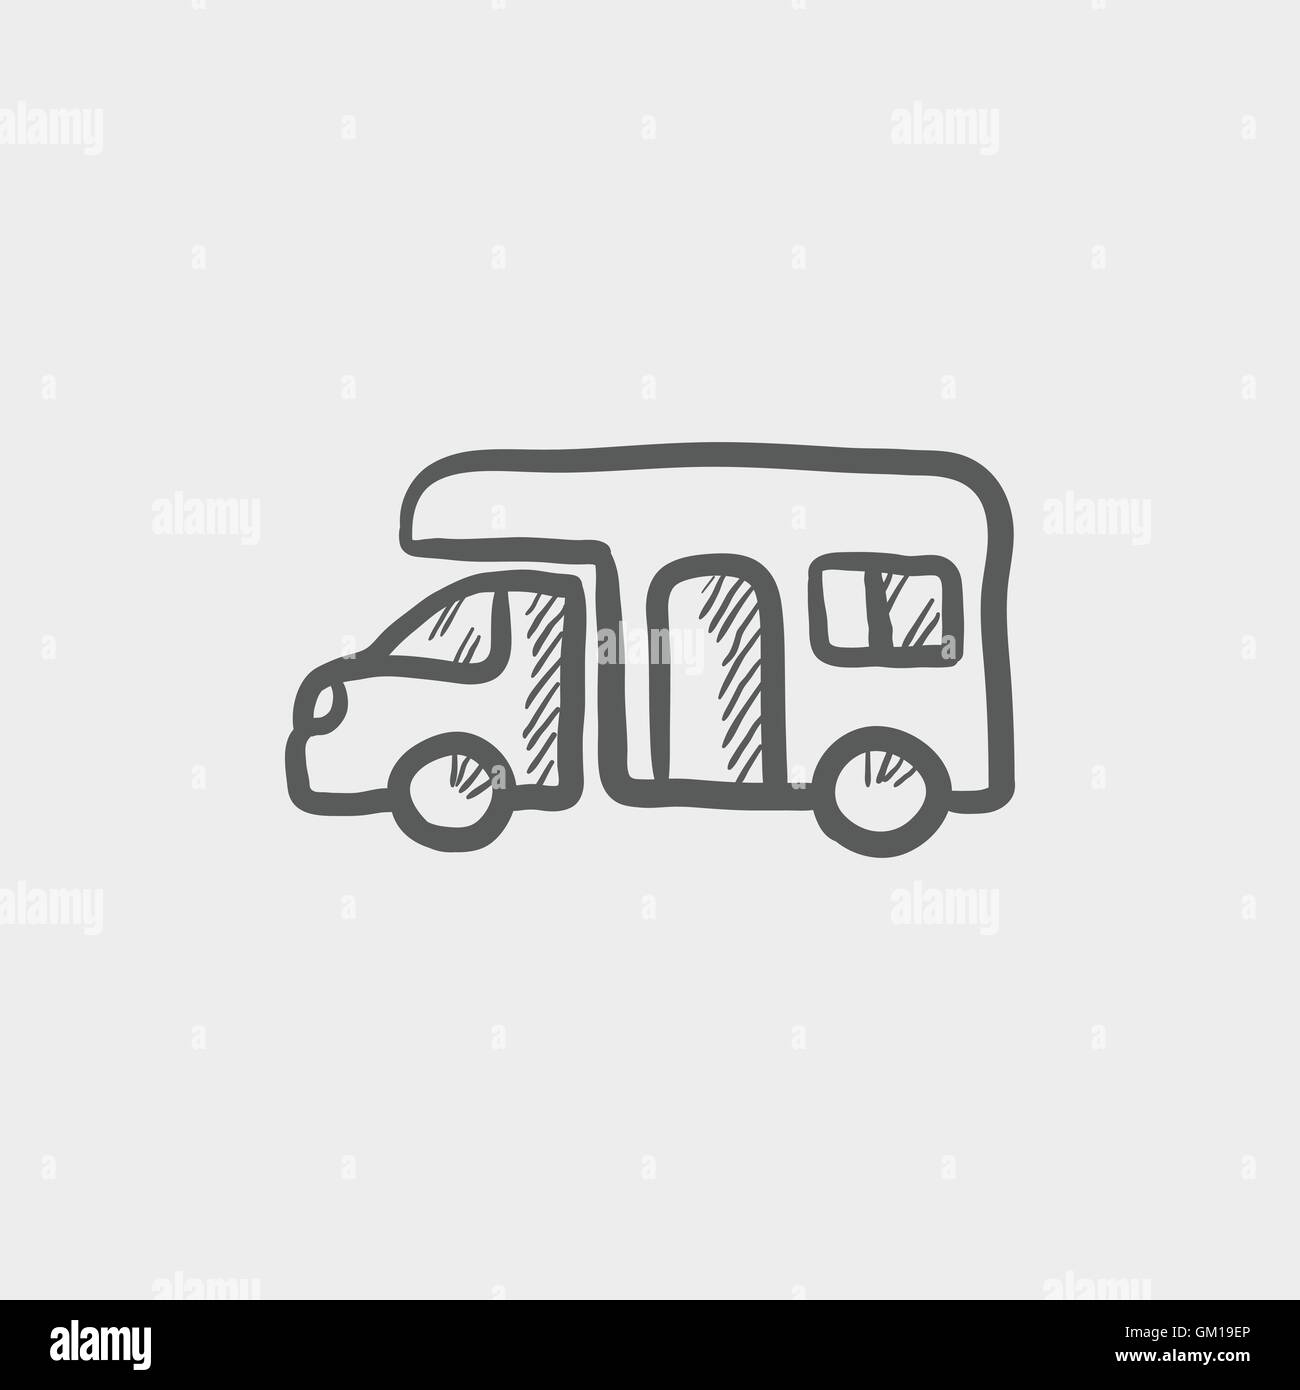 Sketch icon  van car Car icon in doodle sketch lines van delivery bus   CanStock